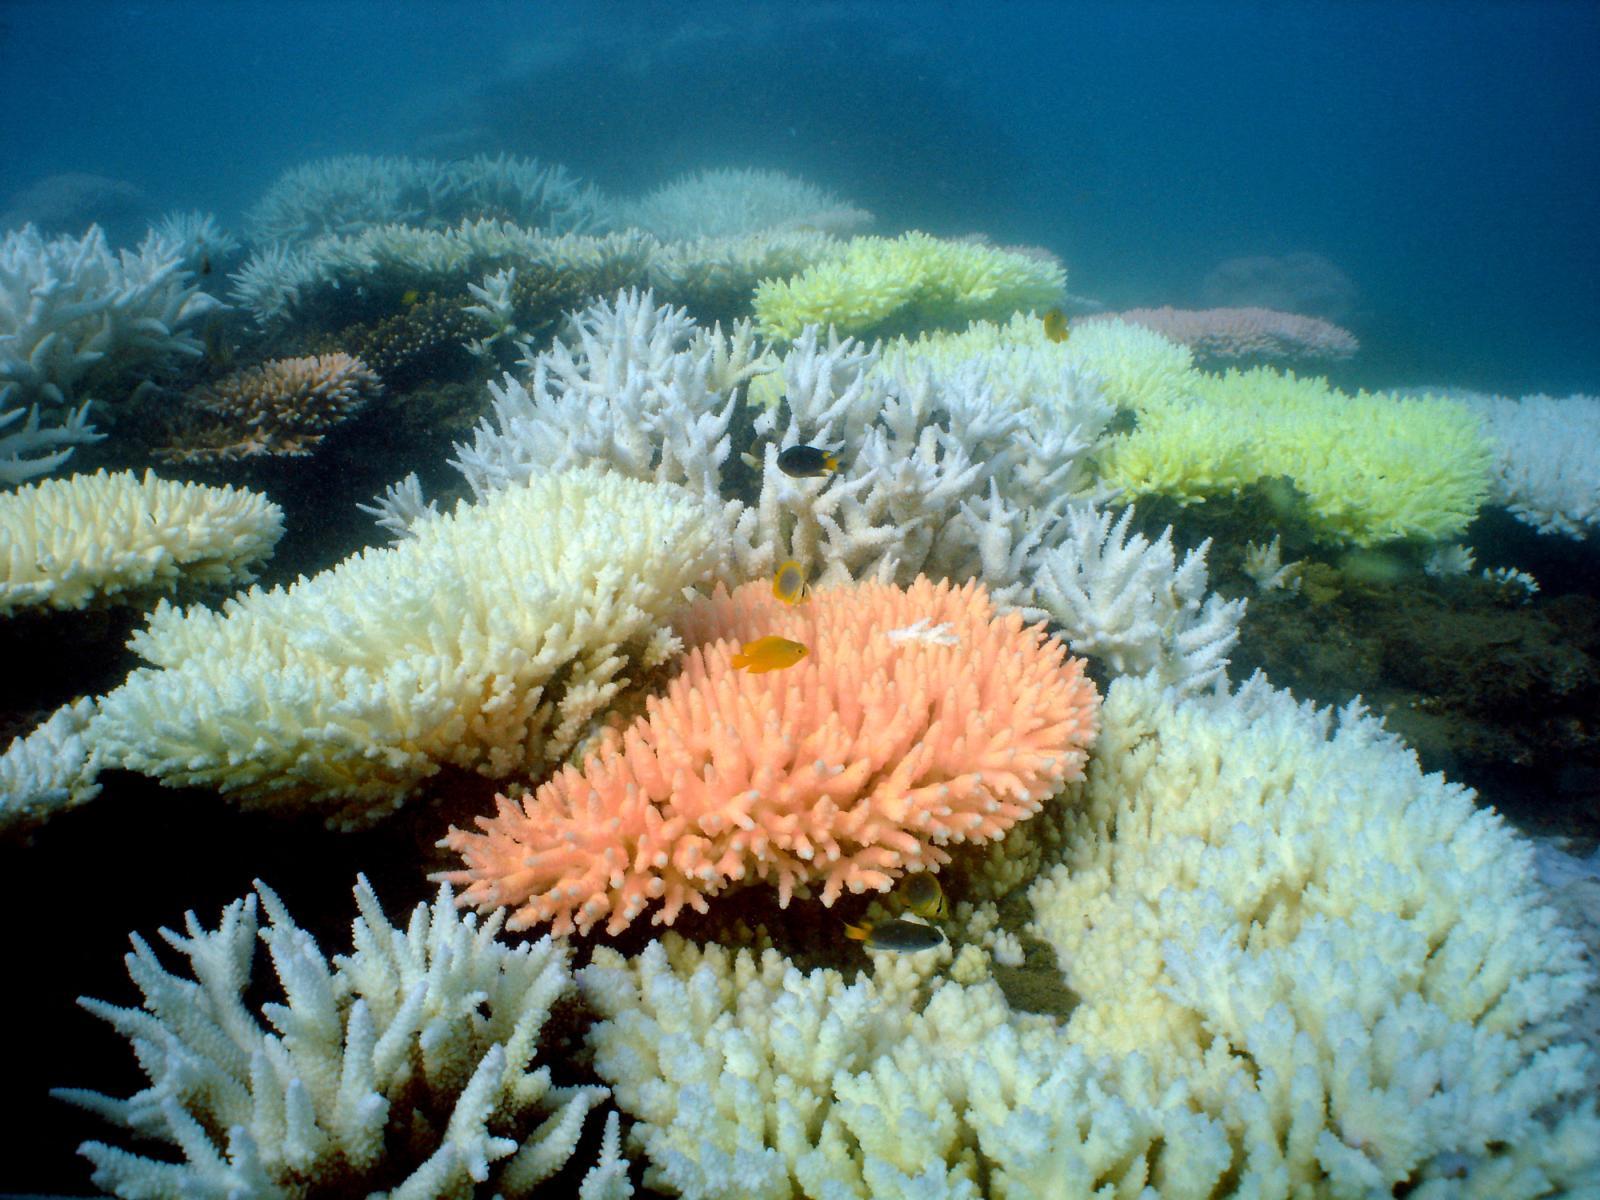 โลกเผชิญสภาวะ “ปะการังฟอกขาวครั้งใหญ่” รอบที่ 4